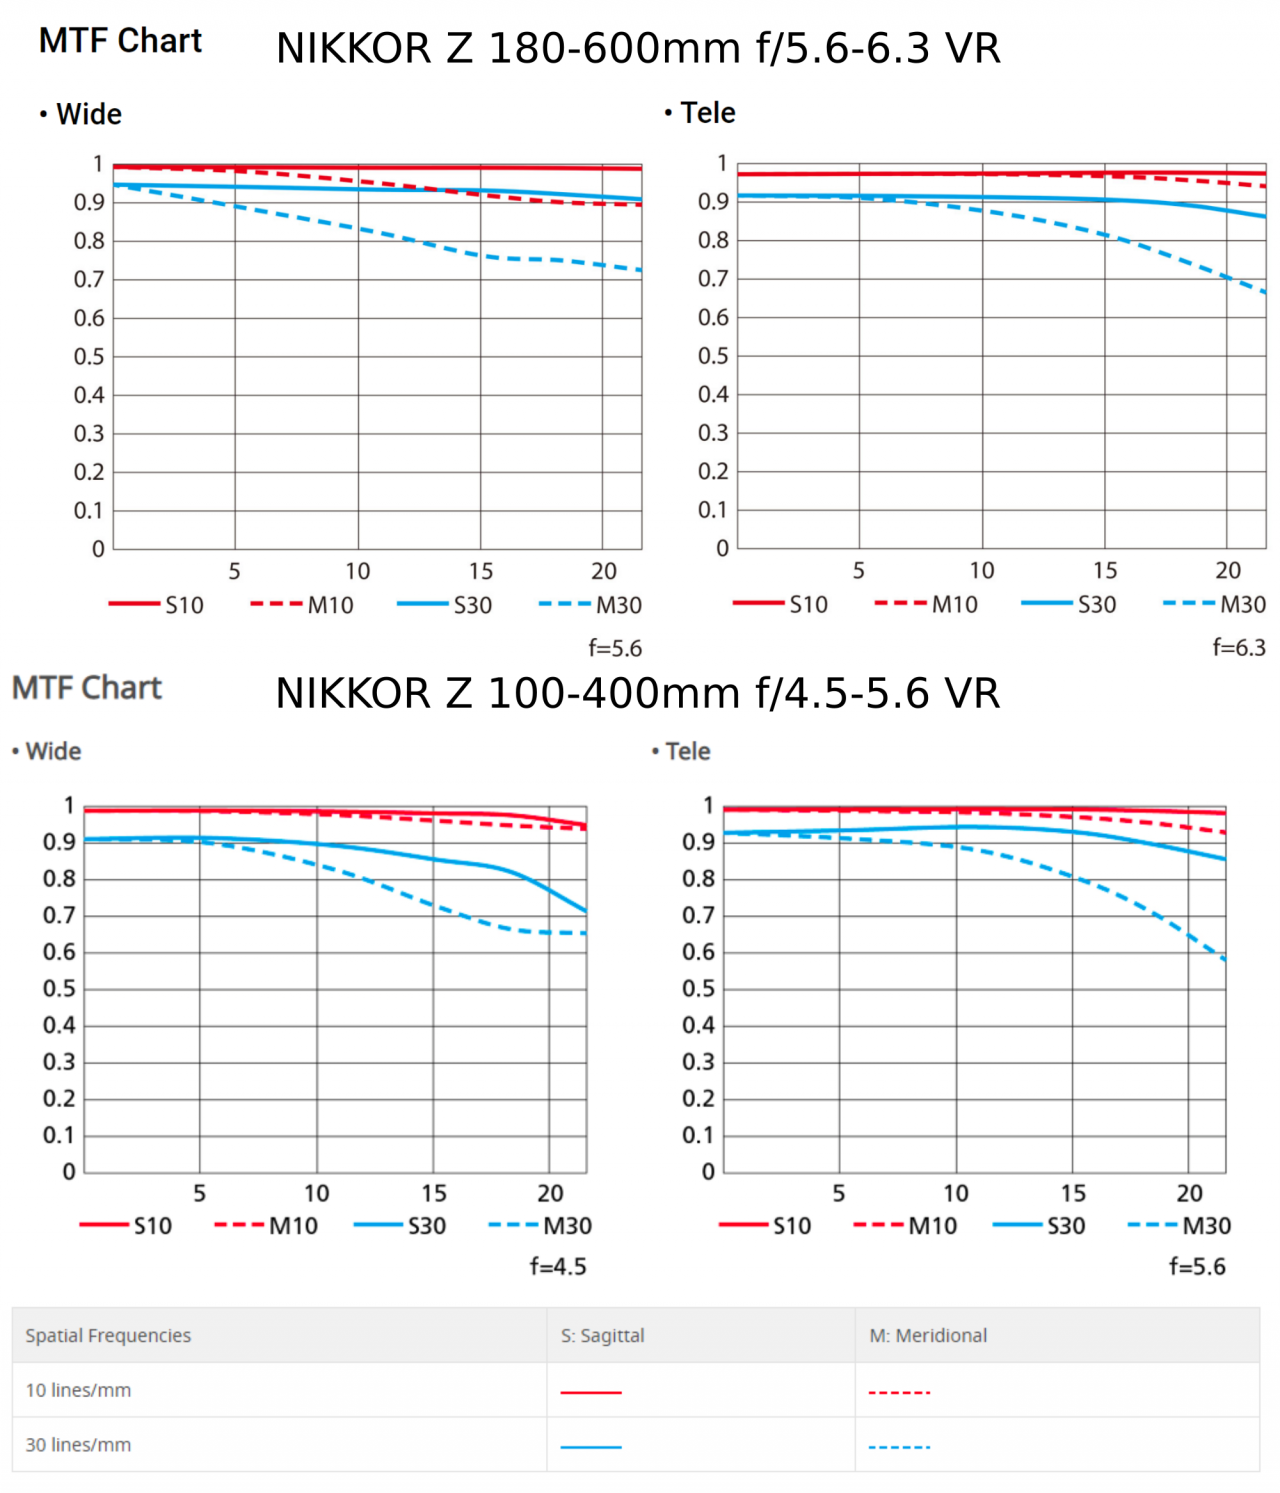 NIKKOR Z 180-600mm srovnání s NIKKOR Z 100-400mm f4.5-5.6 VR S